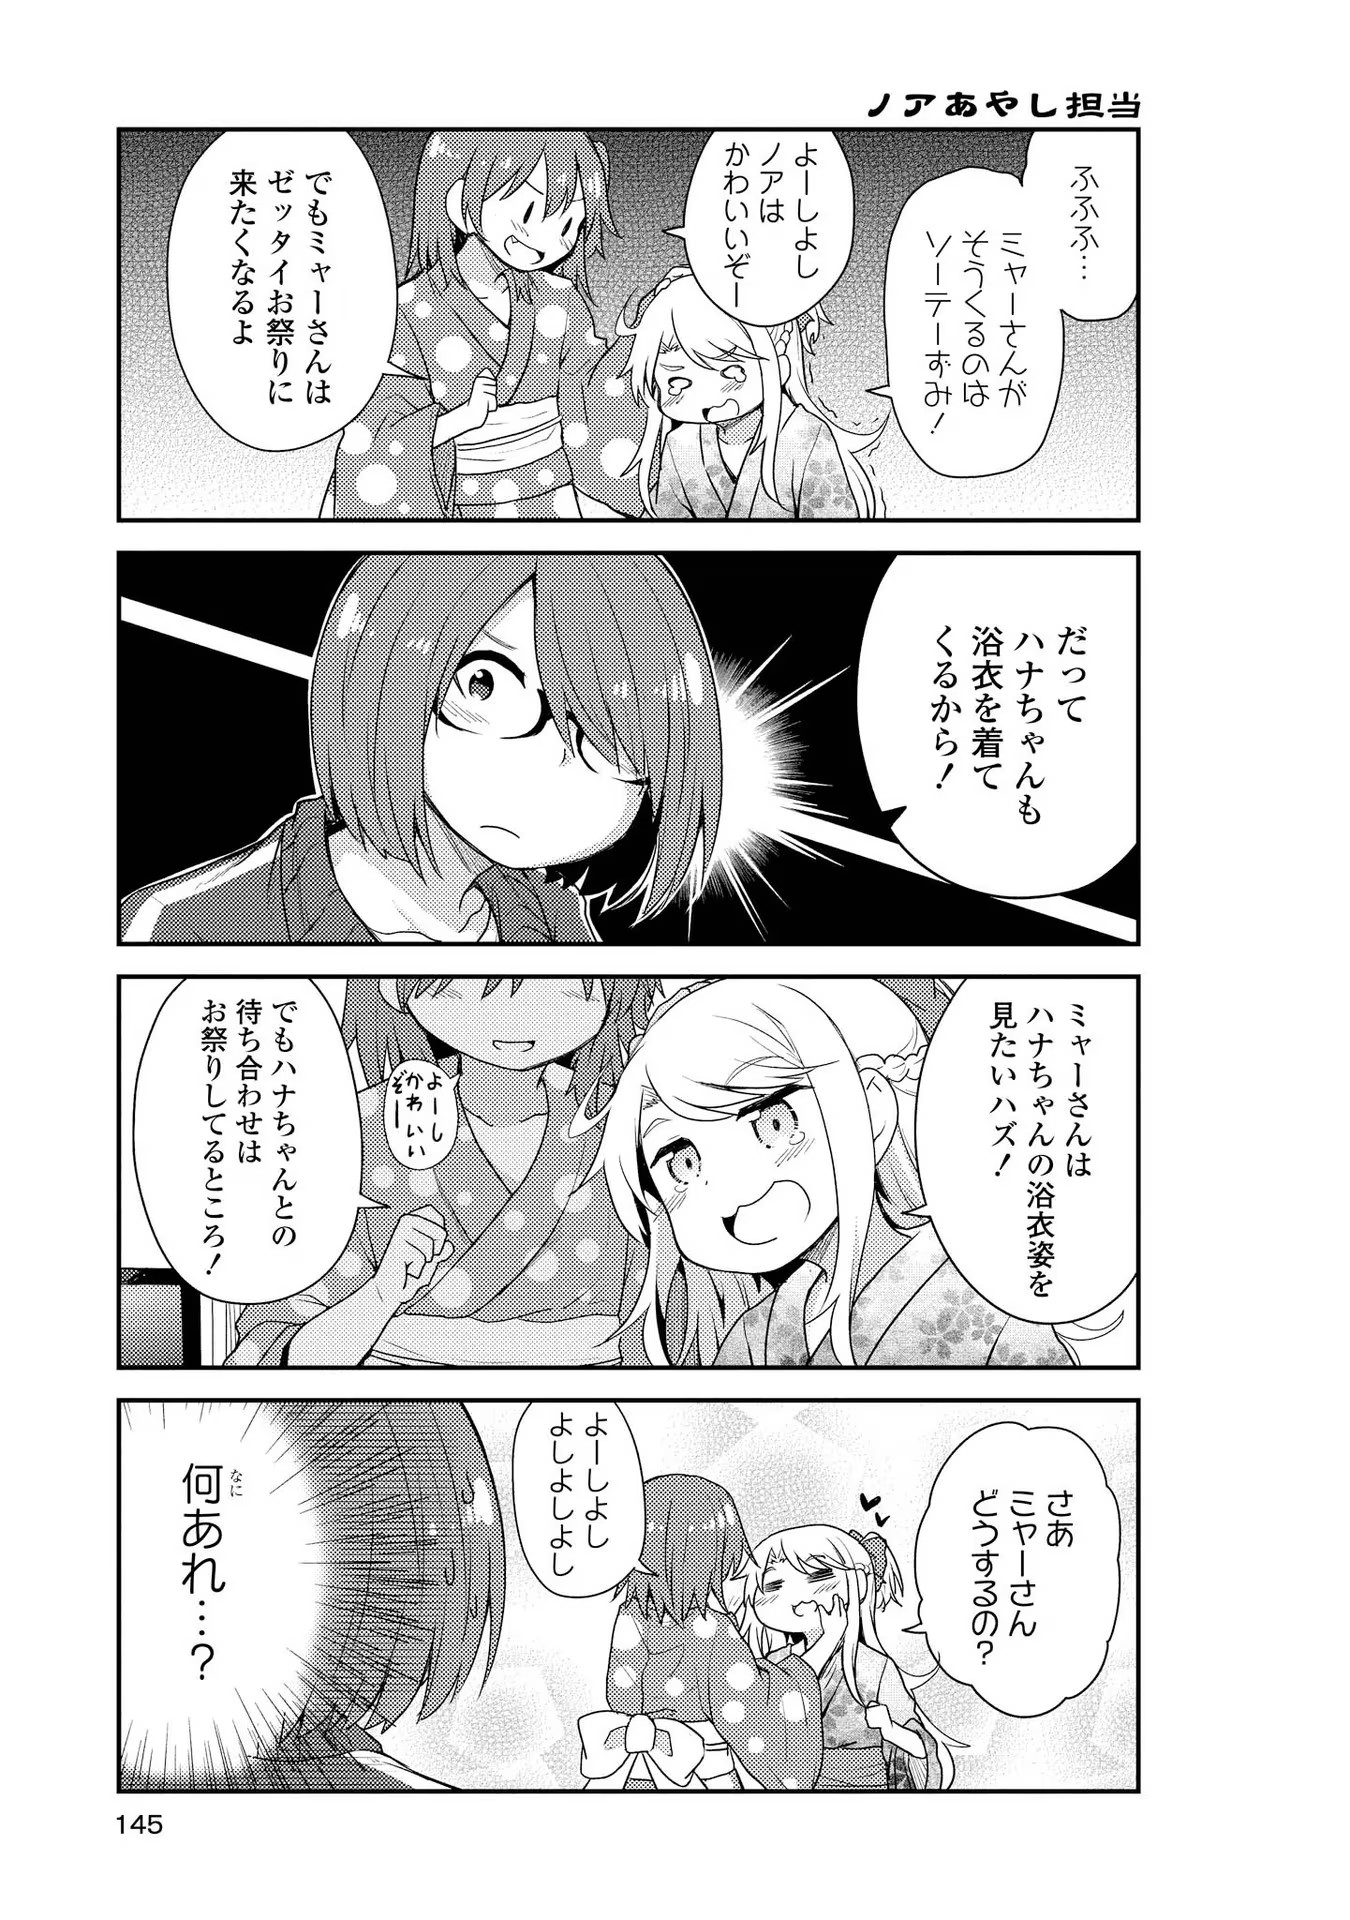 Watashi ni Tenshi ga Maiorita! - Chapter 10 - Page 3